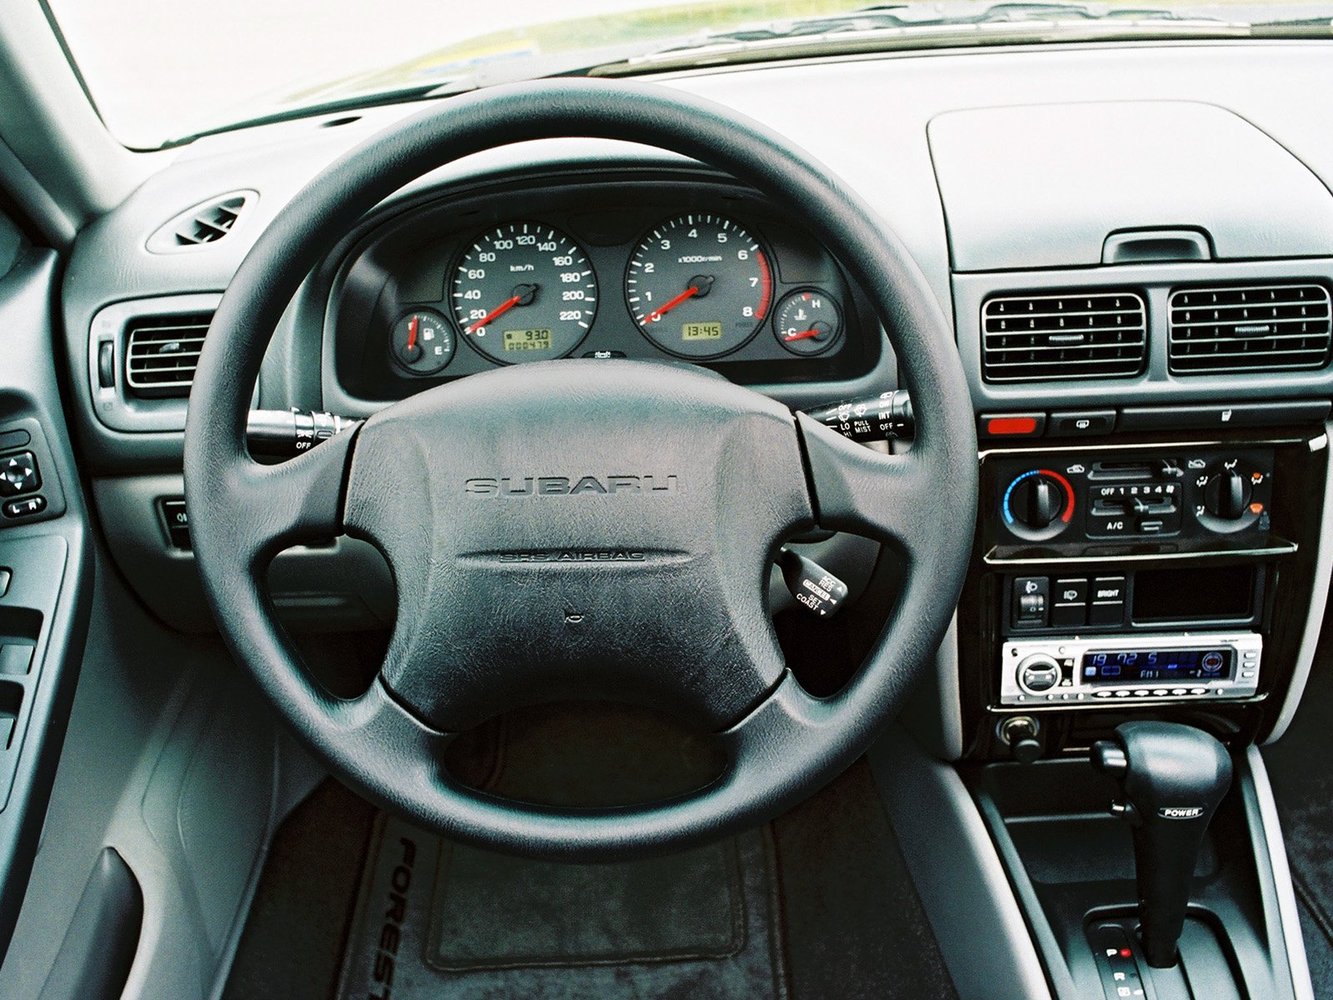 кроссовер Subaru Forester 2000 - 2002г выпуска модификация 2.0 AT (125 л.с.) 4×4